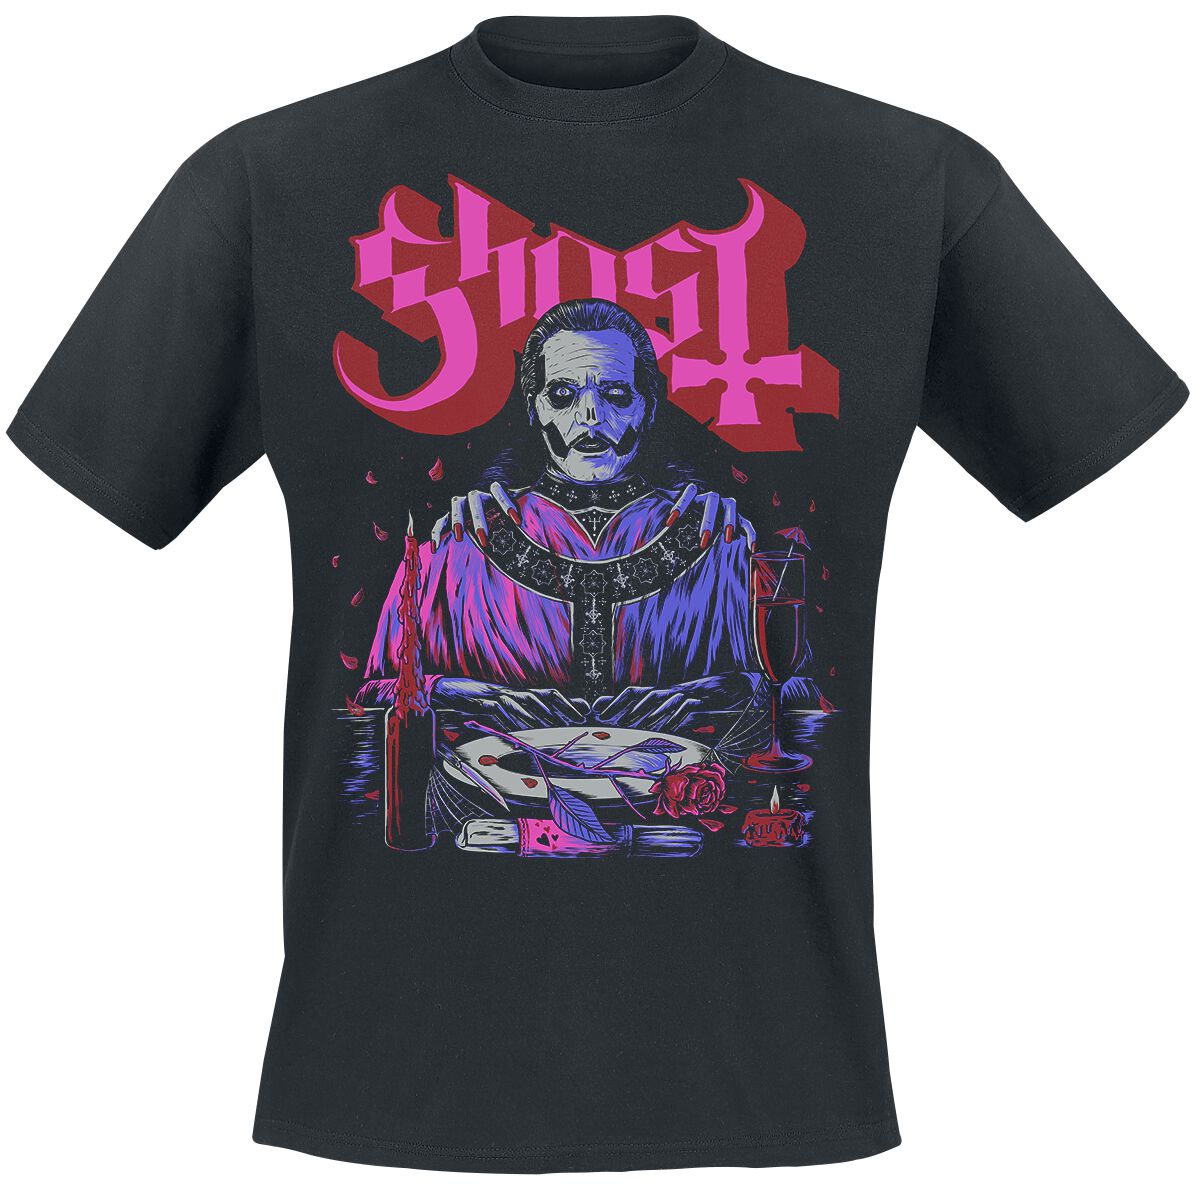 Ghost T-Shirt - Be My Valentines Day - S bis XL - für Männer - Größe XL - schwarz  - Lizenziertes Merchandise!